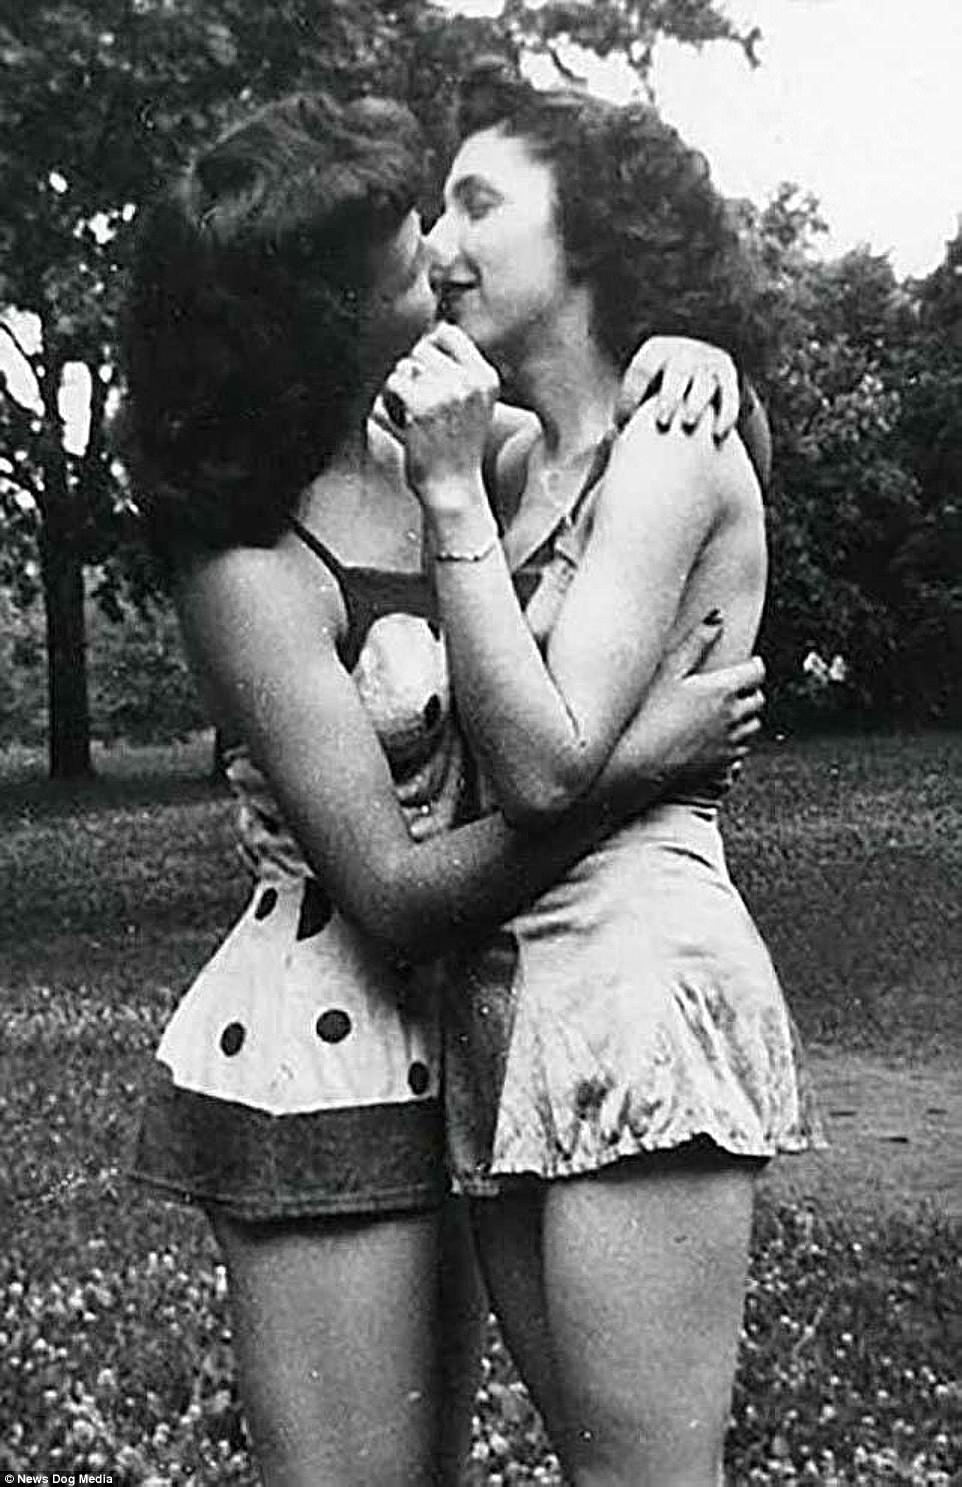   Bức ảnh được chụp vào những năm 1940, hai người phụ nữ trao nhau những cử chỉ thân mật.  